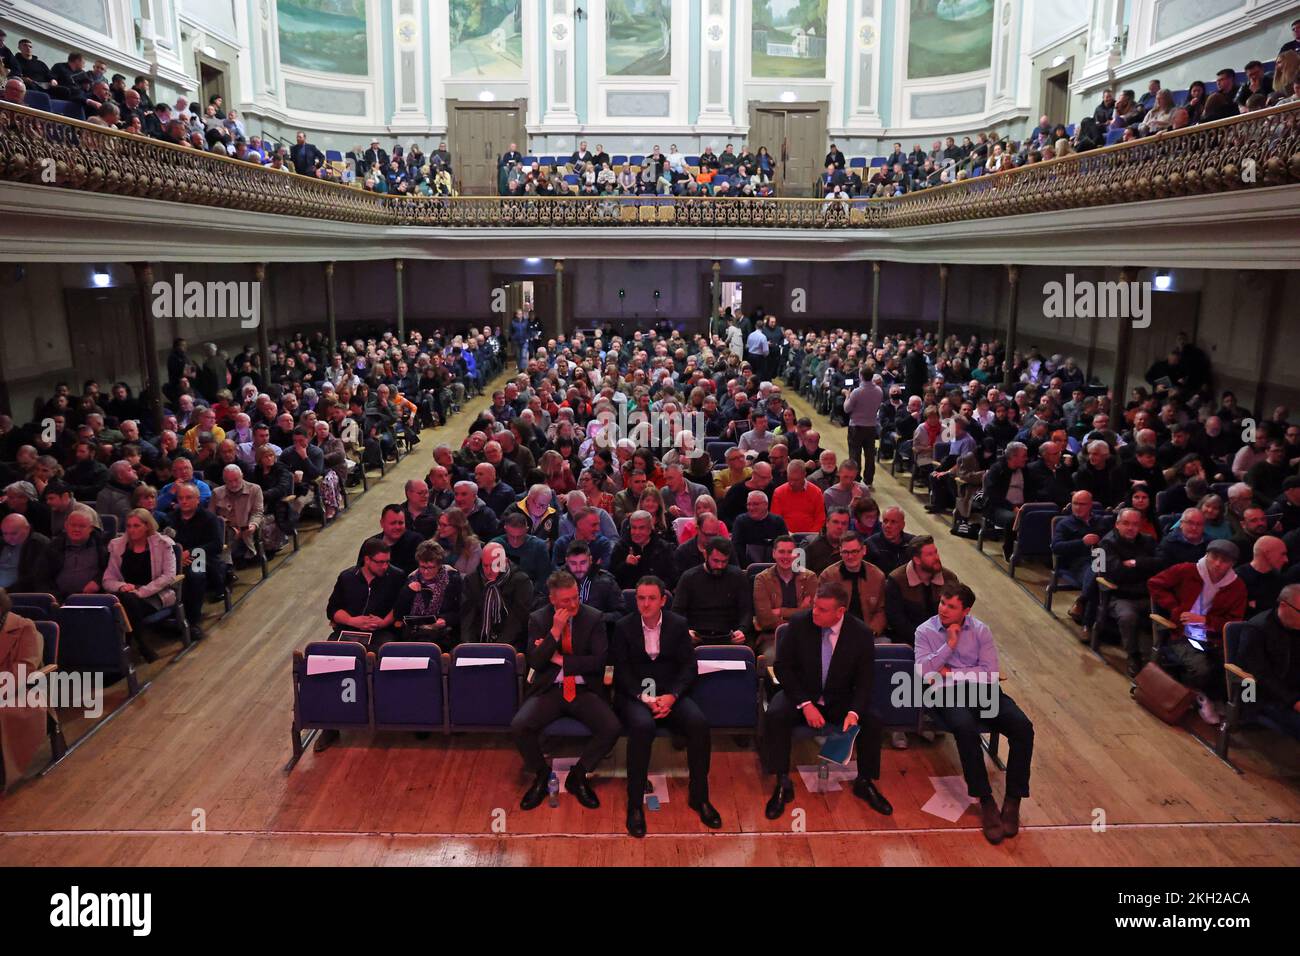 Un point de vue général d'un rassemblement pour l'unification irlandaise organisé par le groupe Pro-Unity Ireland's future au Ulster Hall de Belfast. Date de la photo: Mercredi 23 novembre 2022. Banque D'Images